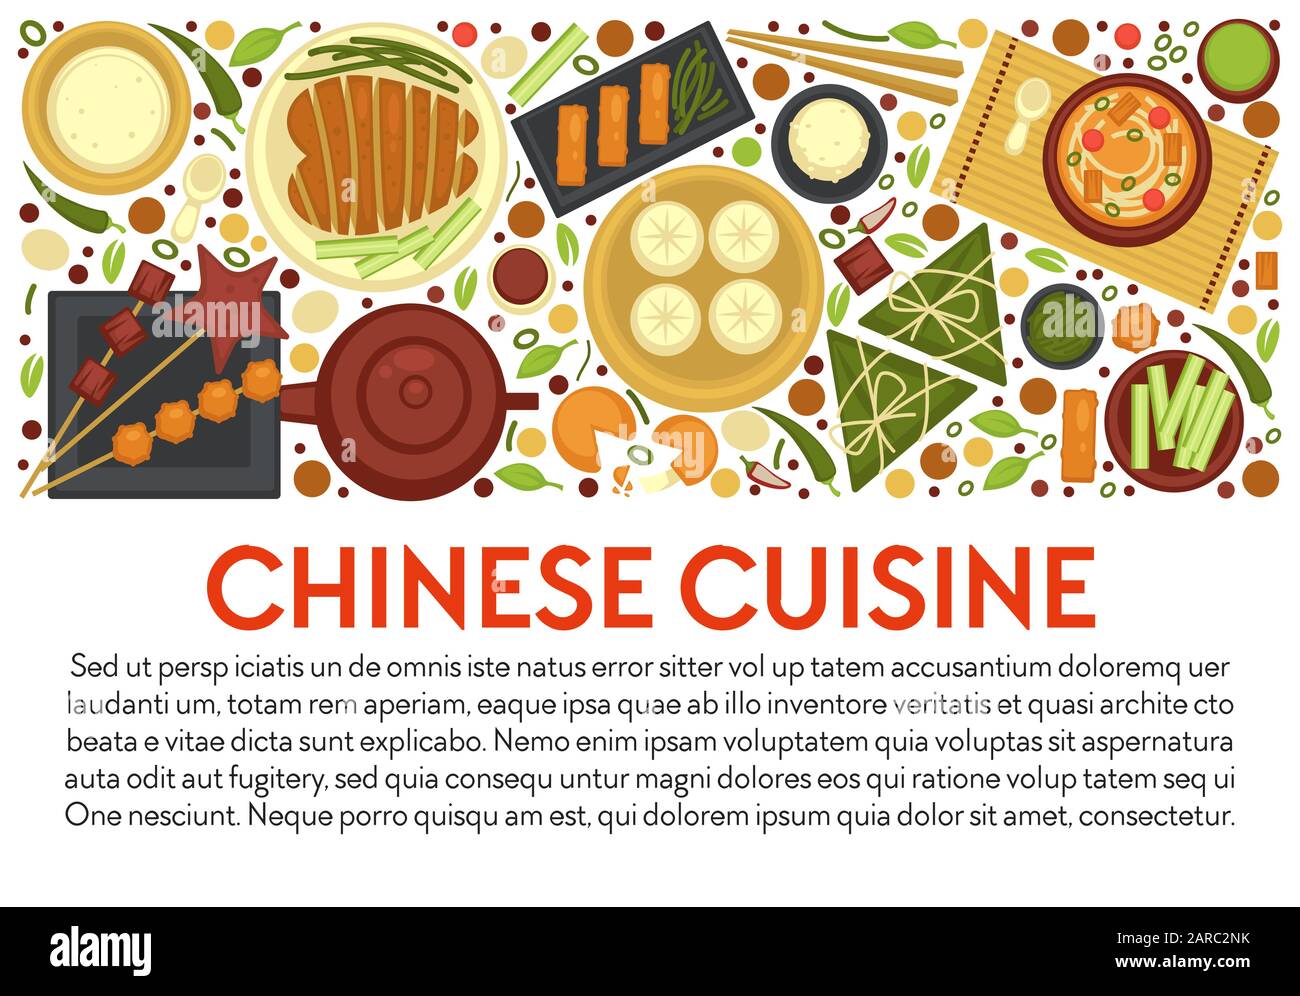 Banner-Vorlage für chinesische Küche mit traditionellem Geschirr, Layout und Text Stock Vektor